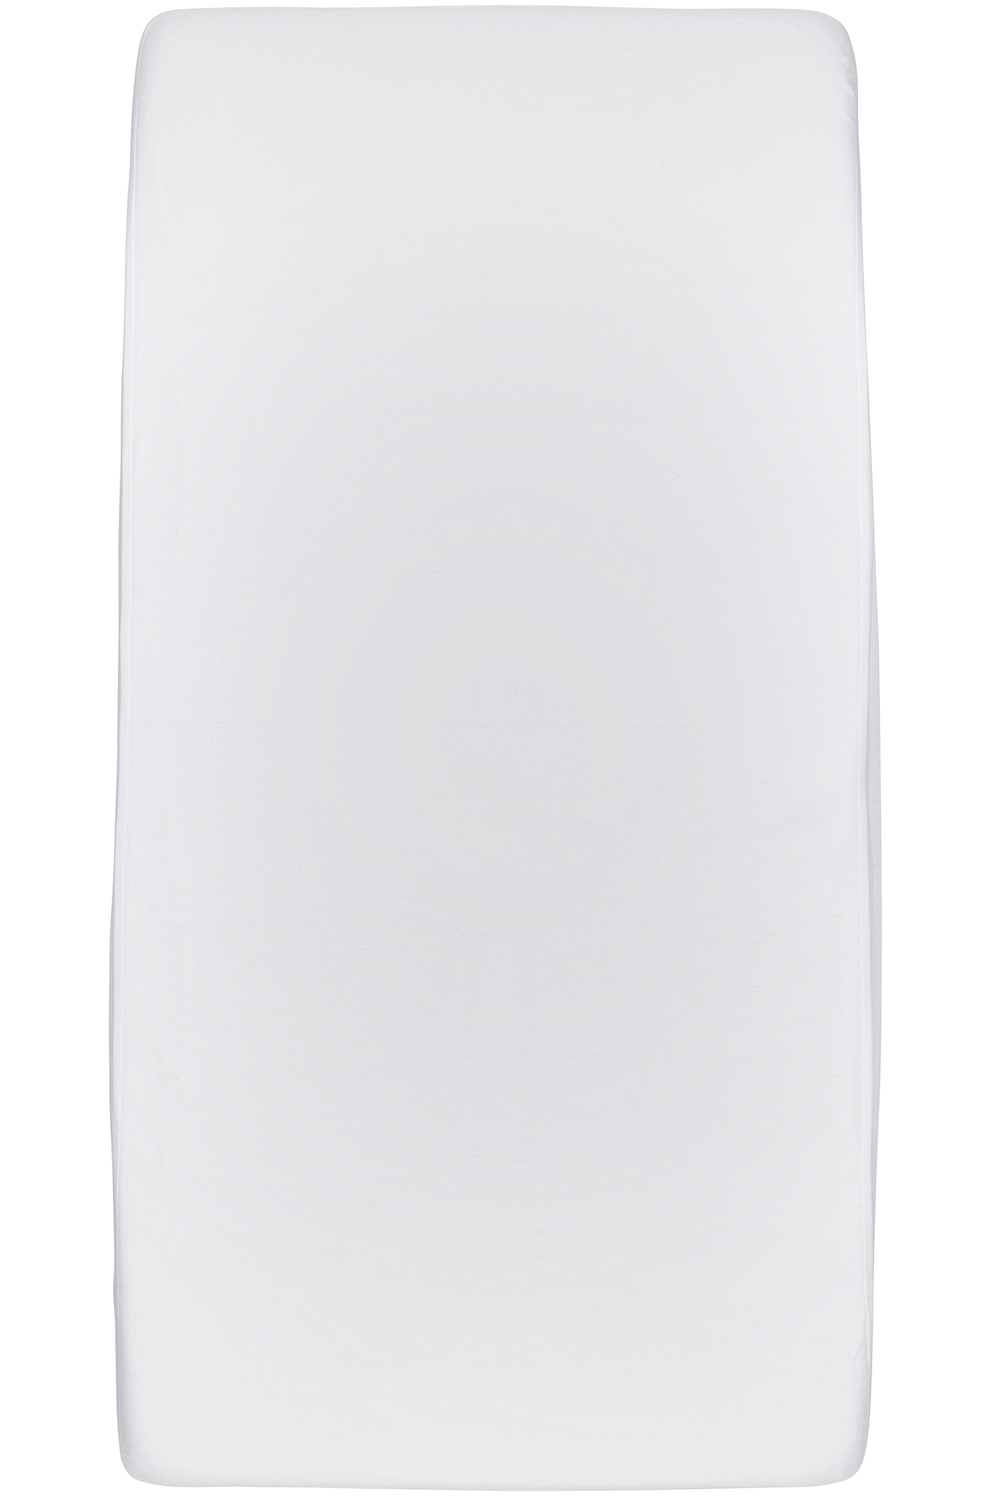 Waterdicht hoeslaken eenpersoonsbed - white - 90x200cm